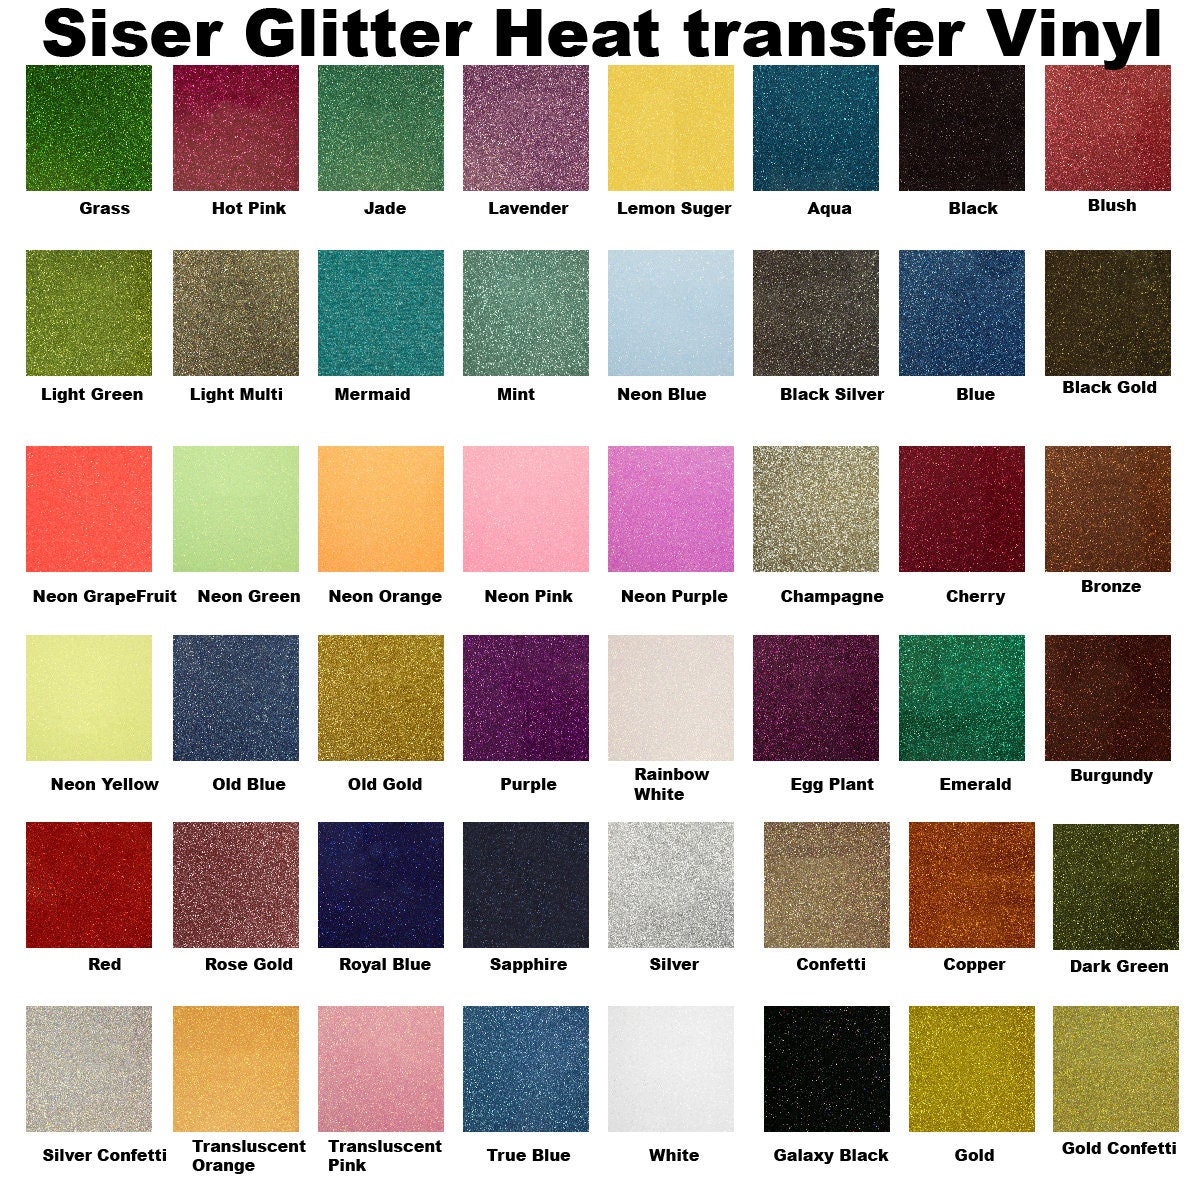 Old Blue Siser Glitter Heat Transfer Vinyl (HTV) (Bulk Rolls)